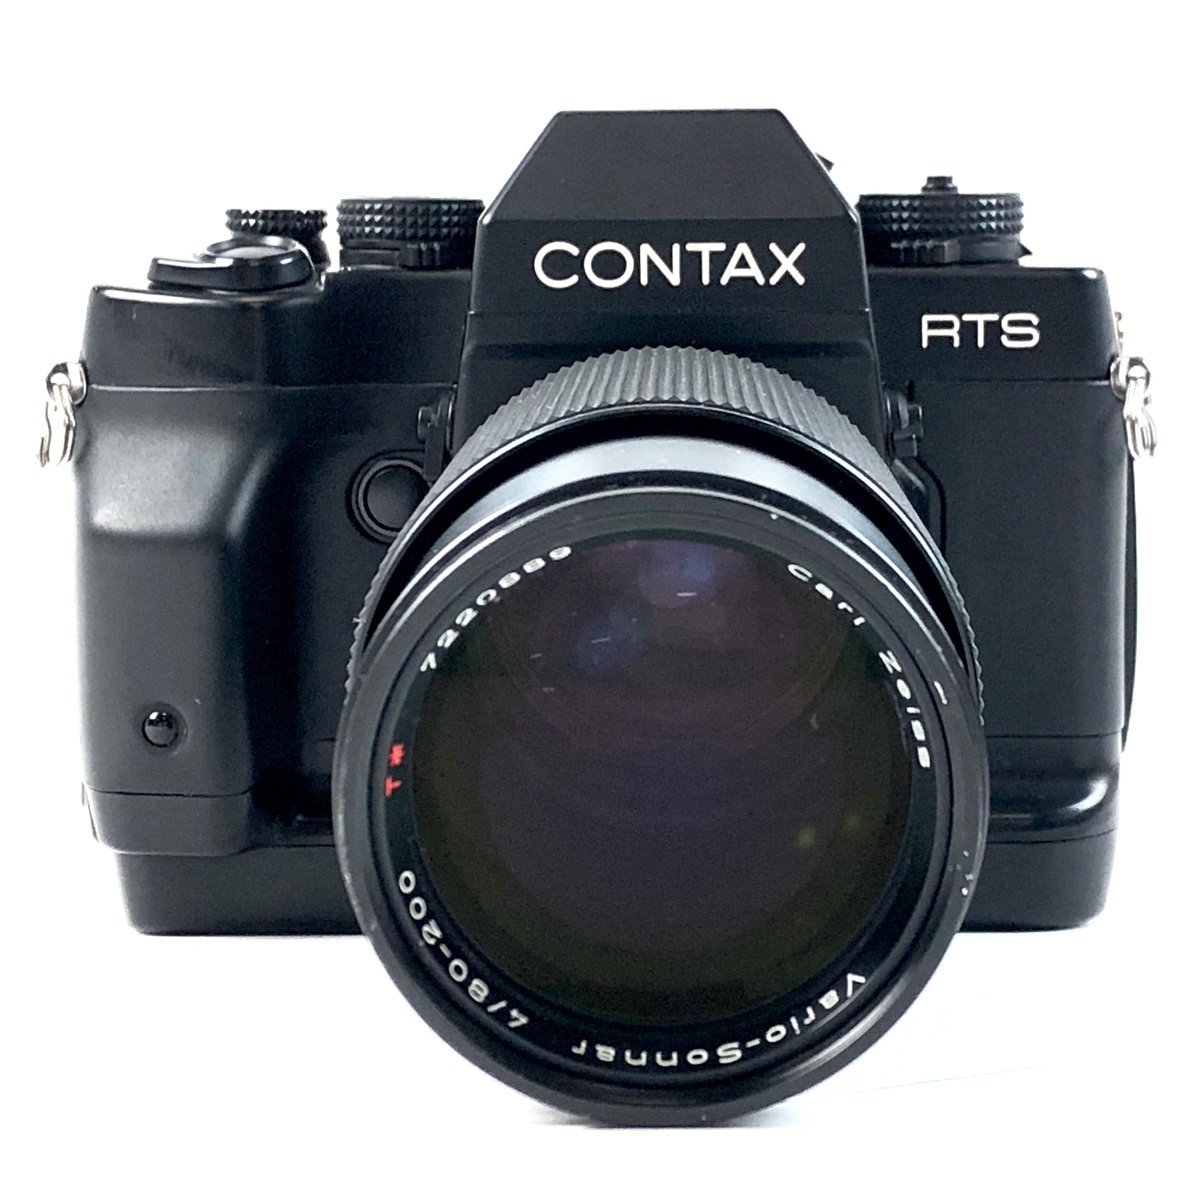 特別セール品】 CONTAX コンタックス RTS 【中古】 一眼レフカメラ